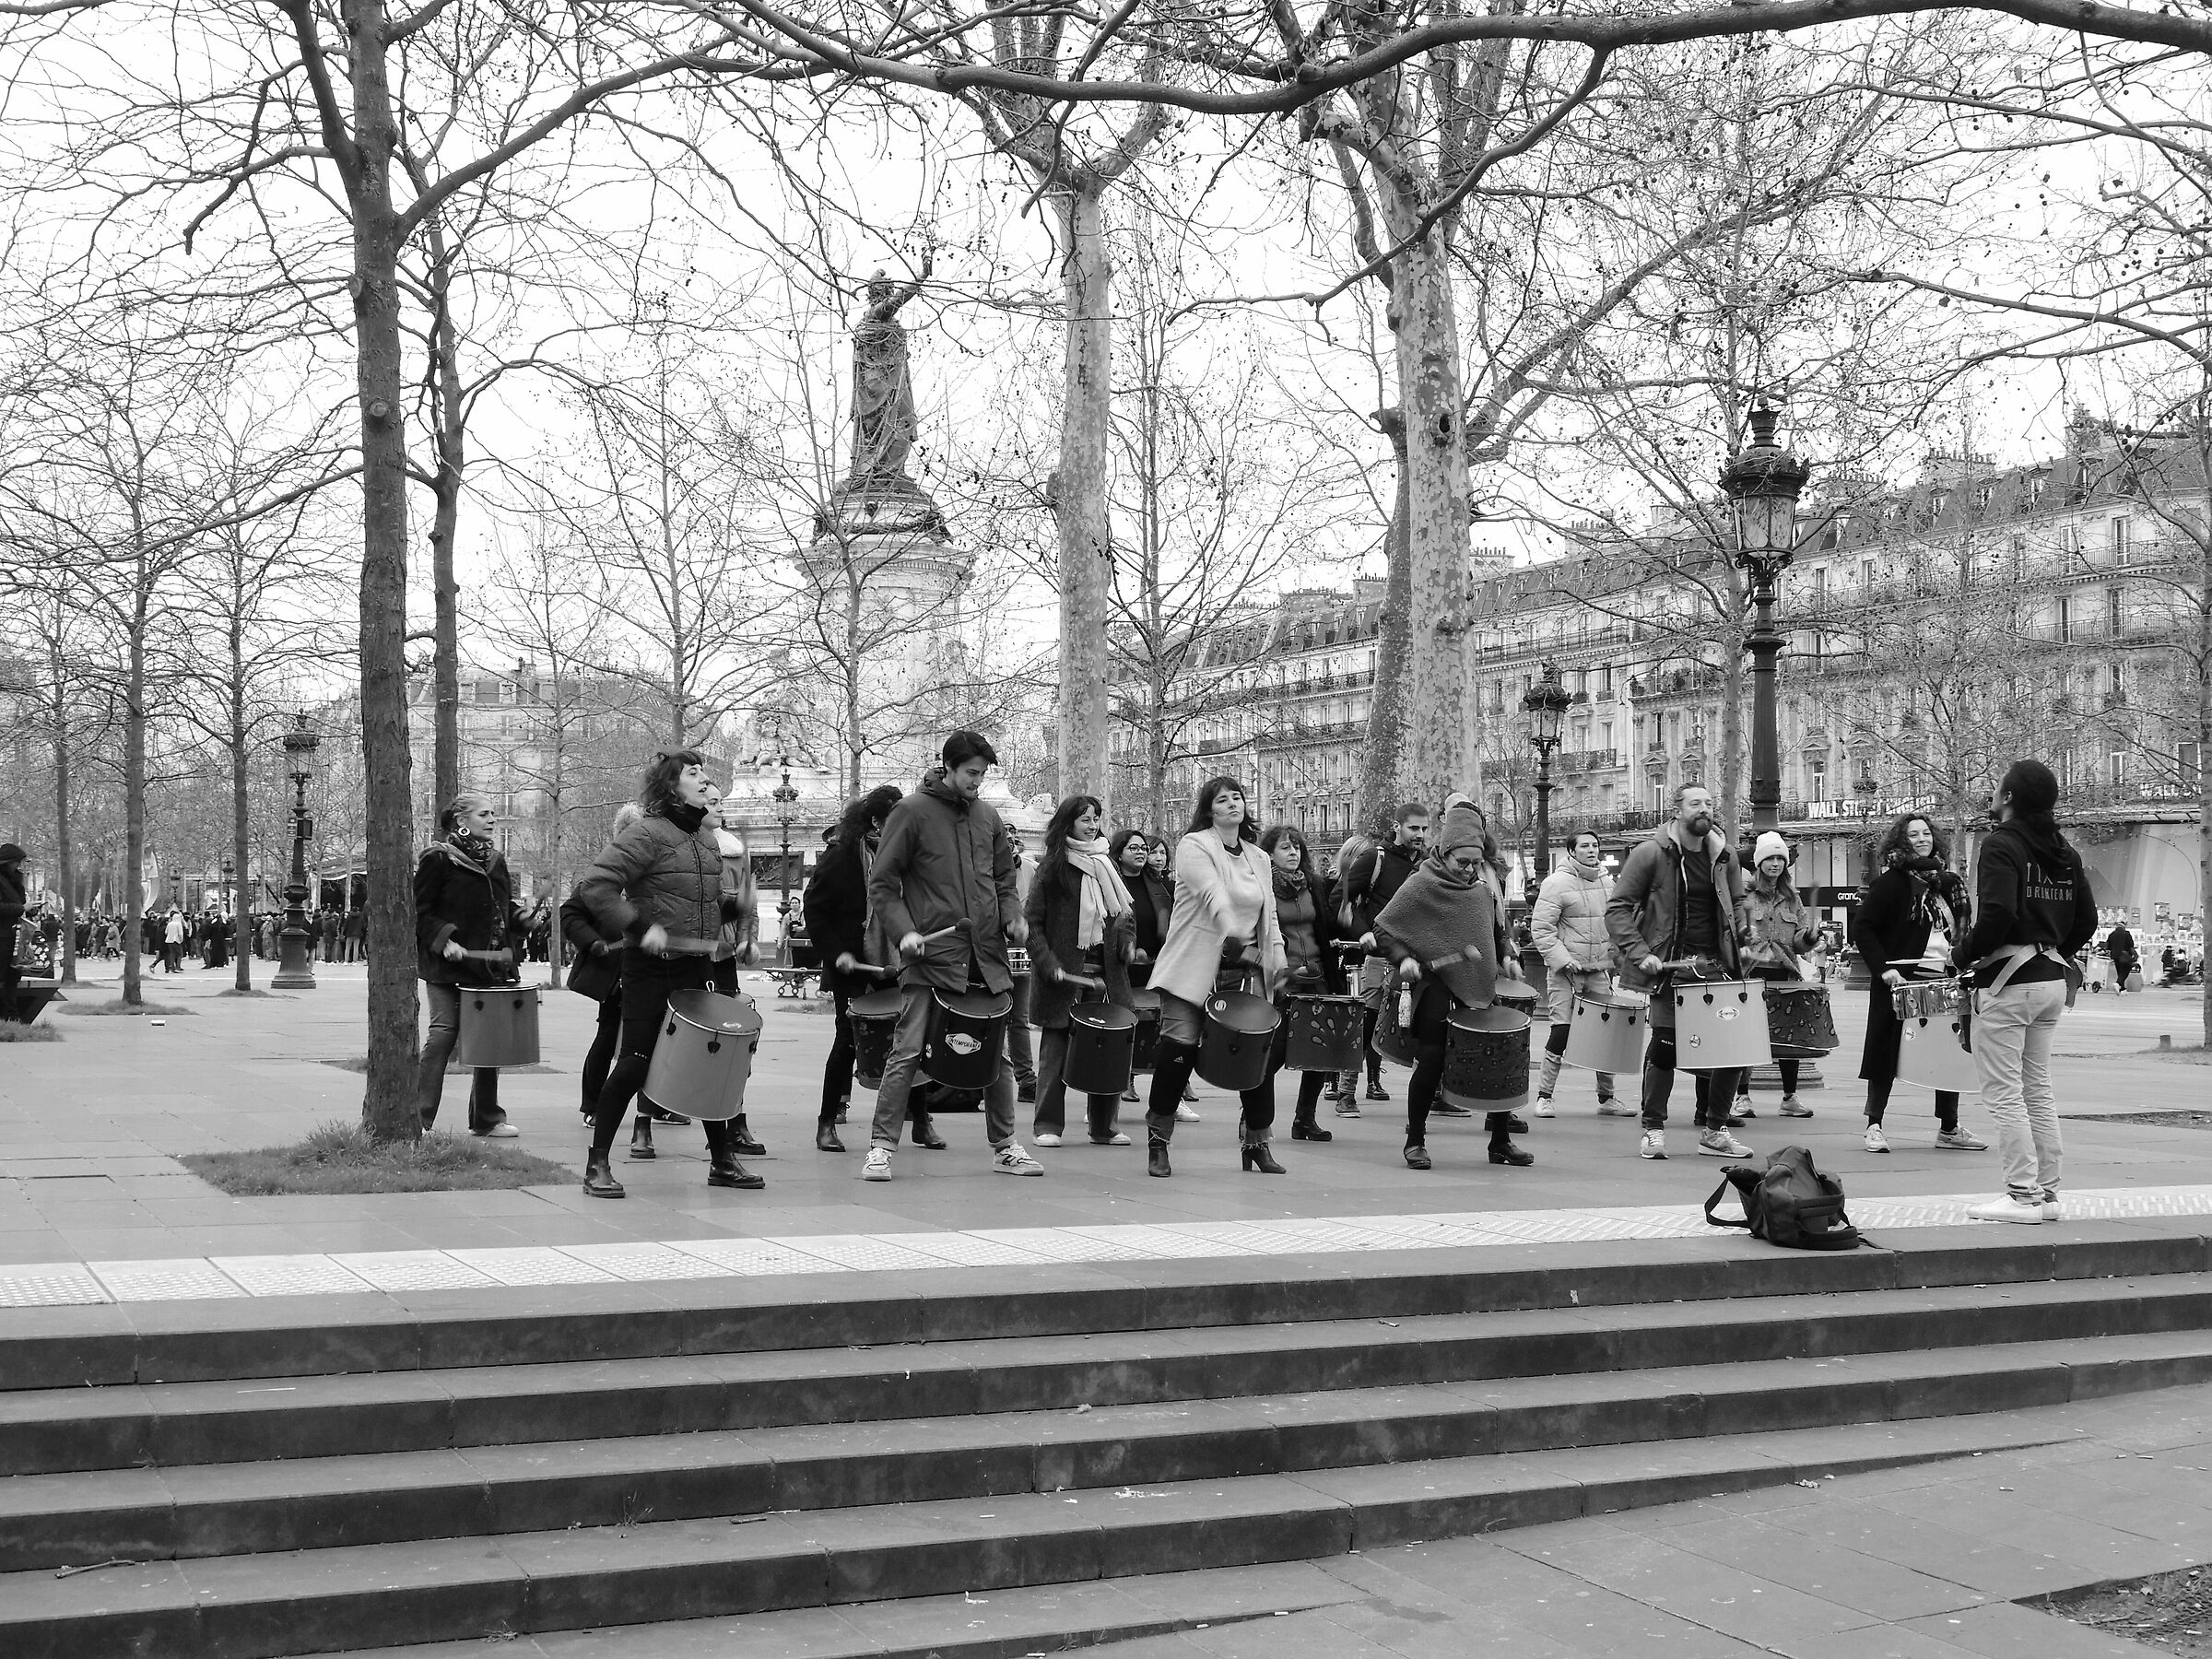 Joy at the Place de la Republique...